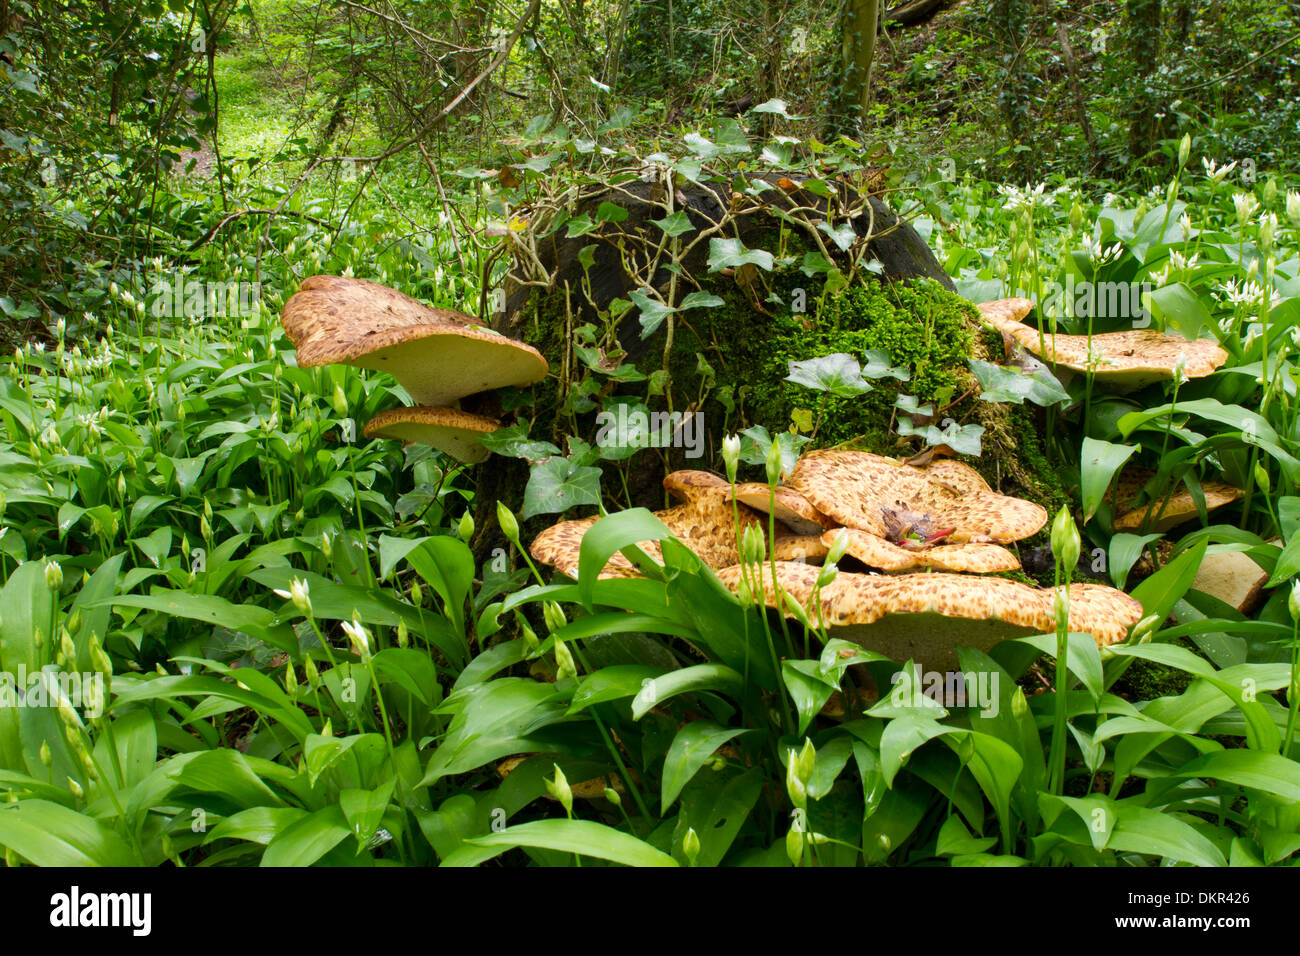 La dryade (Polyporus squamosus champignons selle) issues d'une souche d'arbre. Shropshire, Angleterre. Mai. Banque D'Images